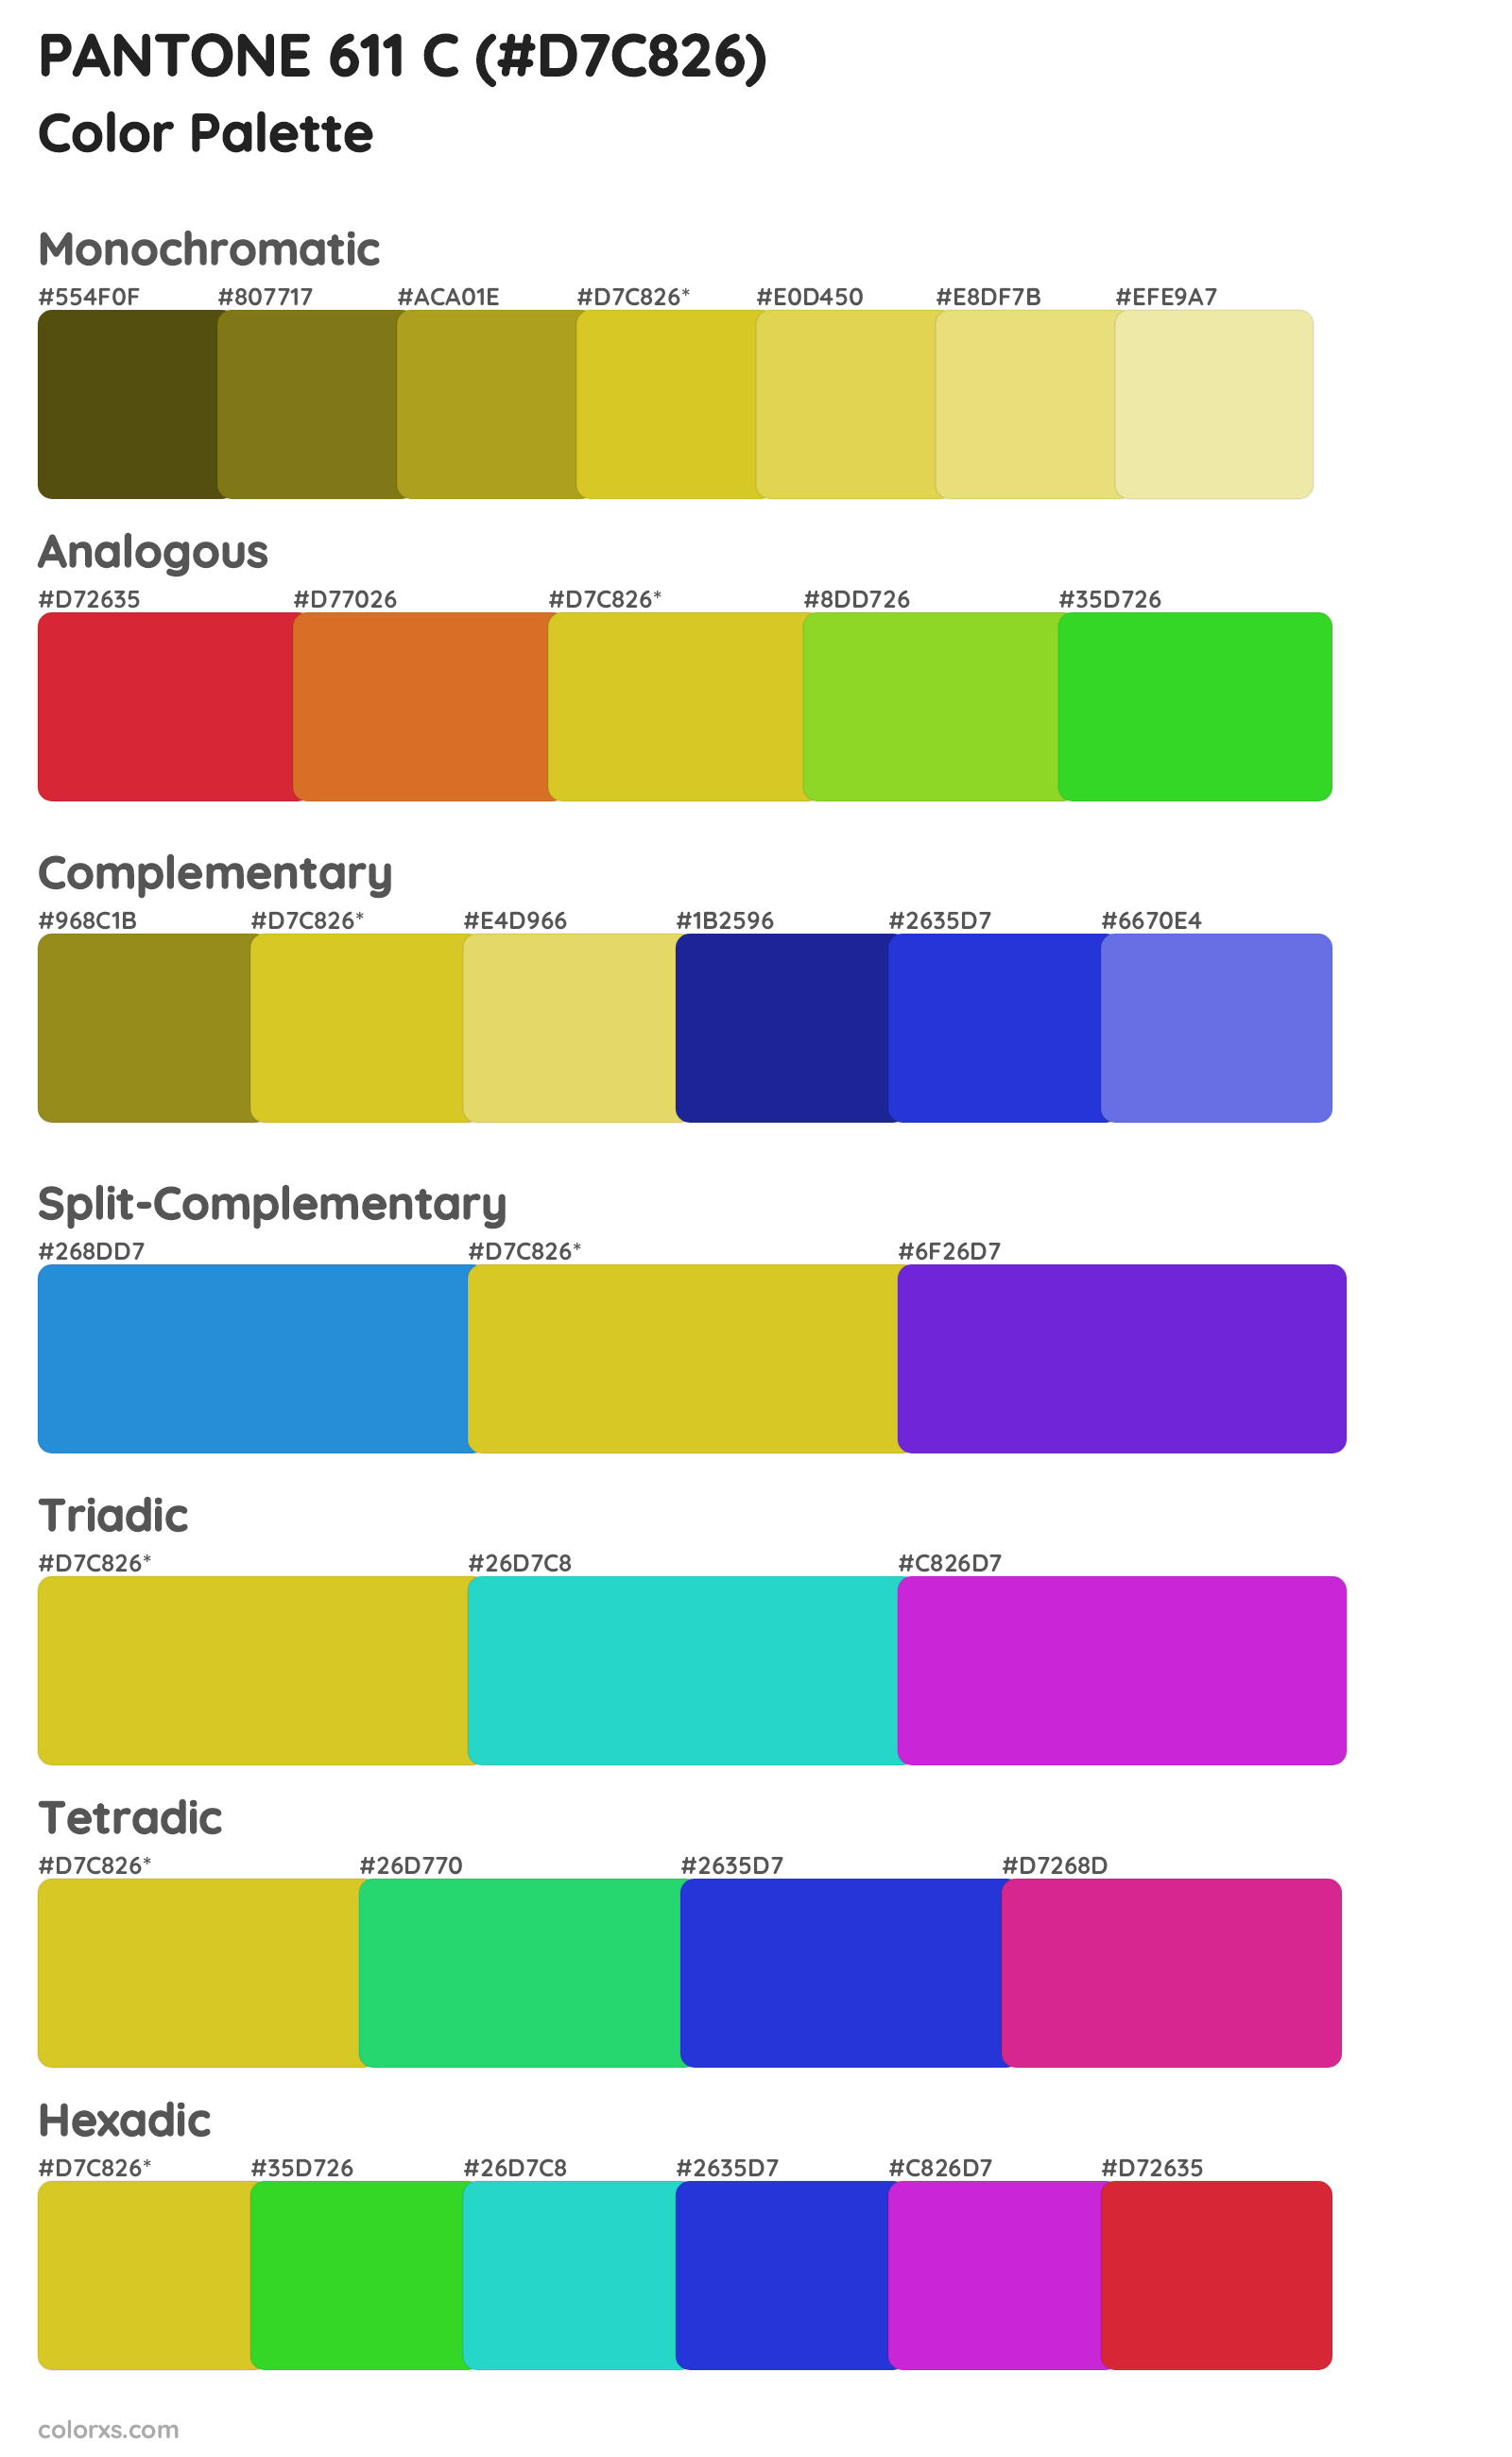 PANTONE 611 C Color Scheme Palettes